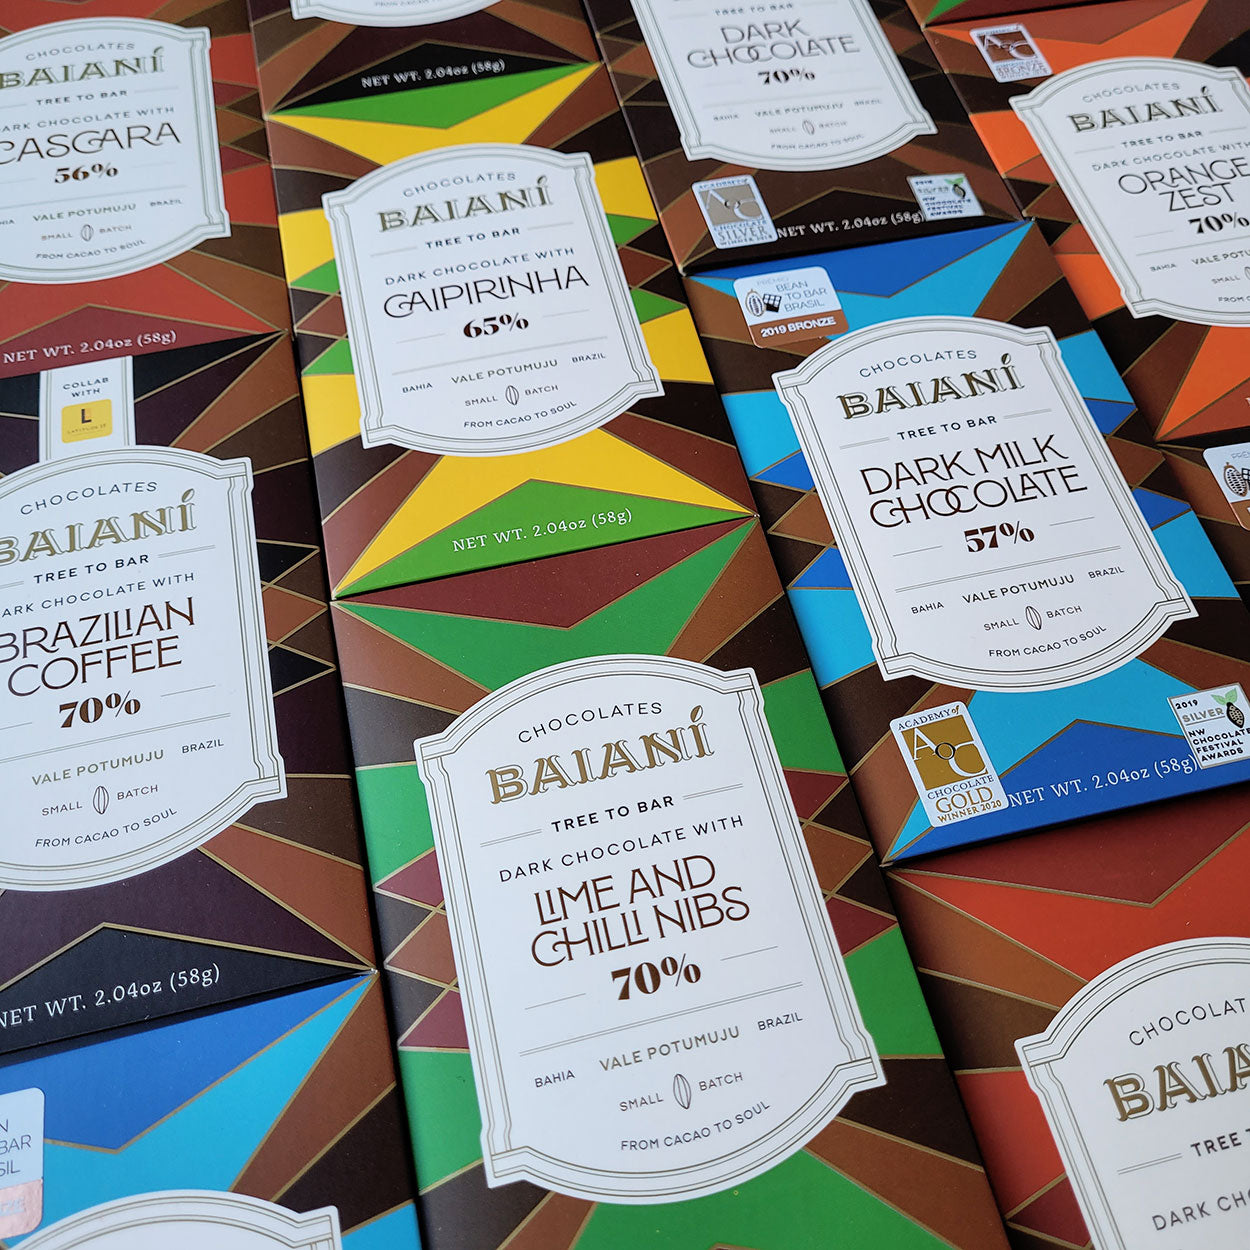 Baiani Chocolate, Brazil, in Canada, Tree to Bar